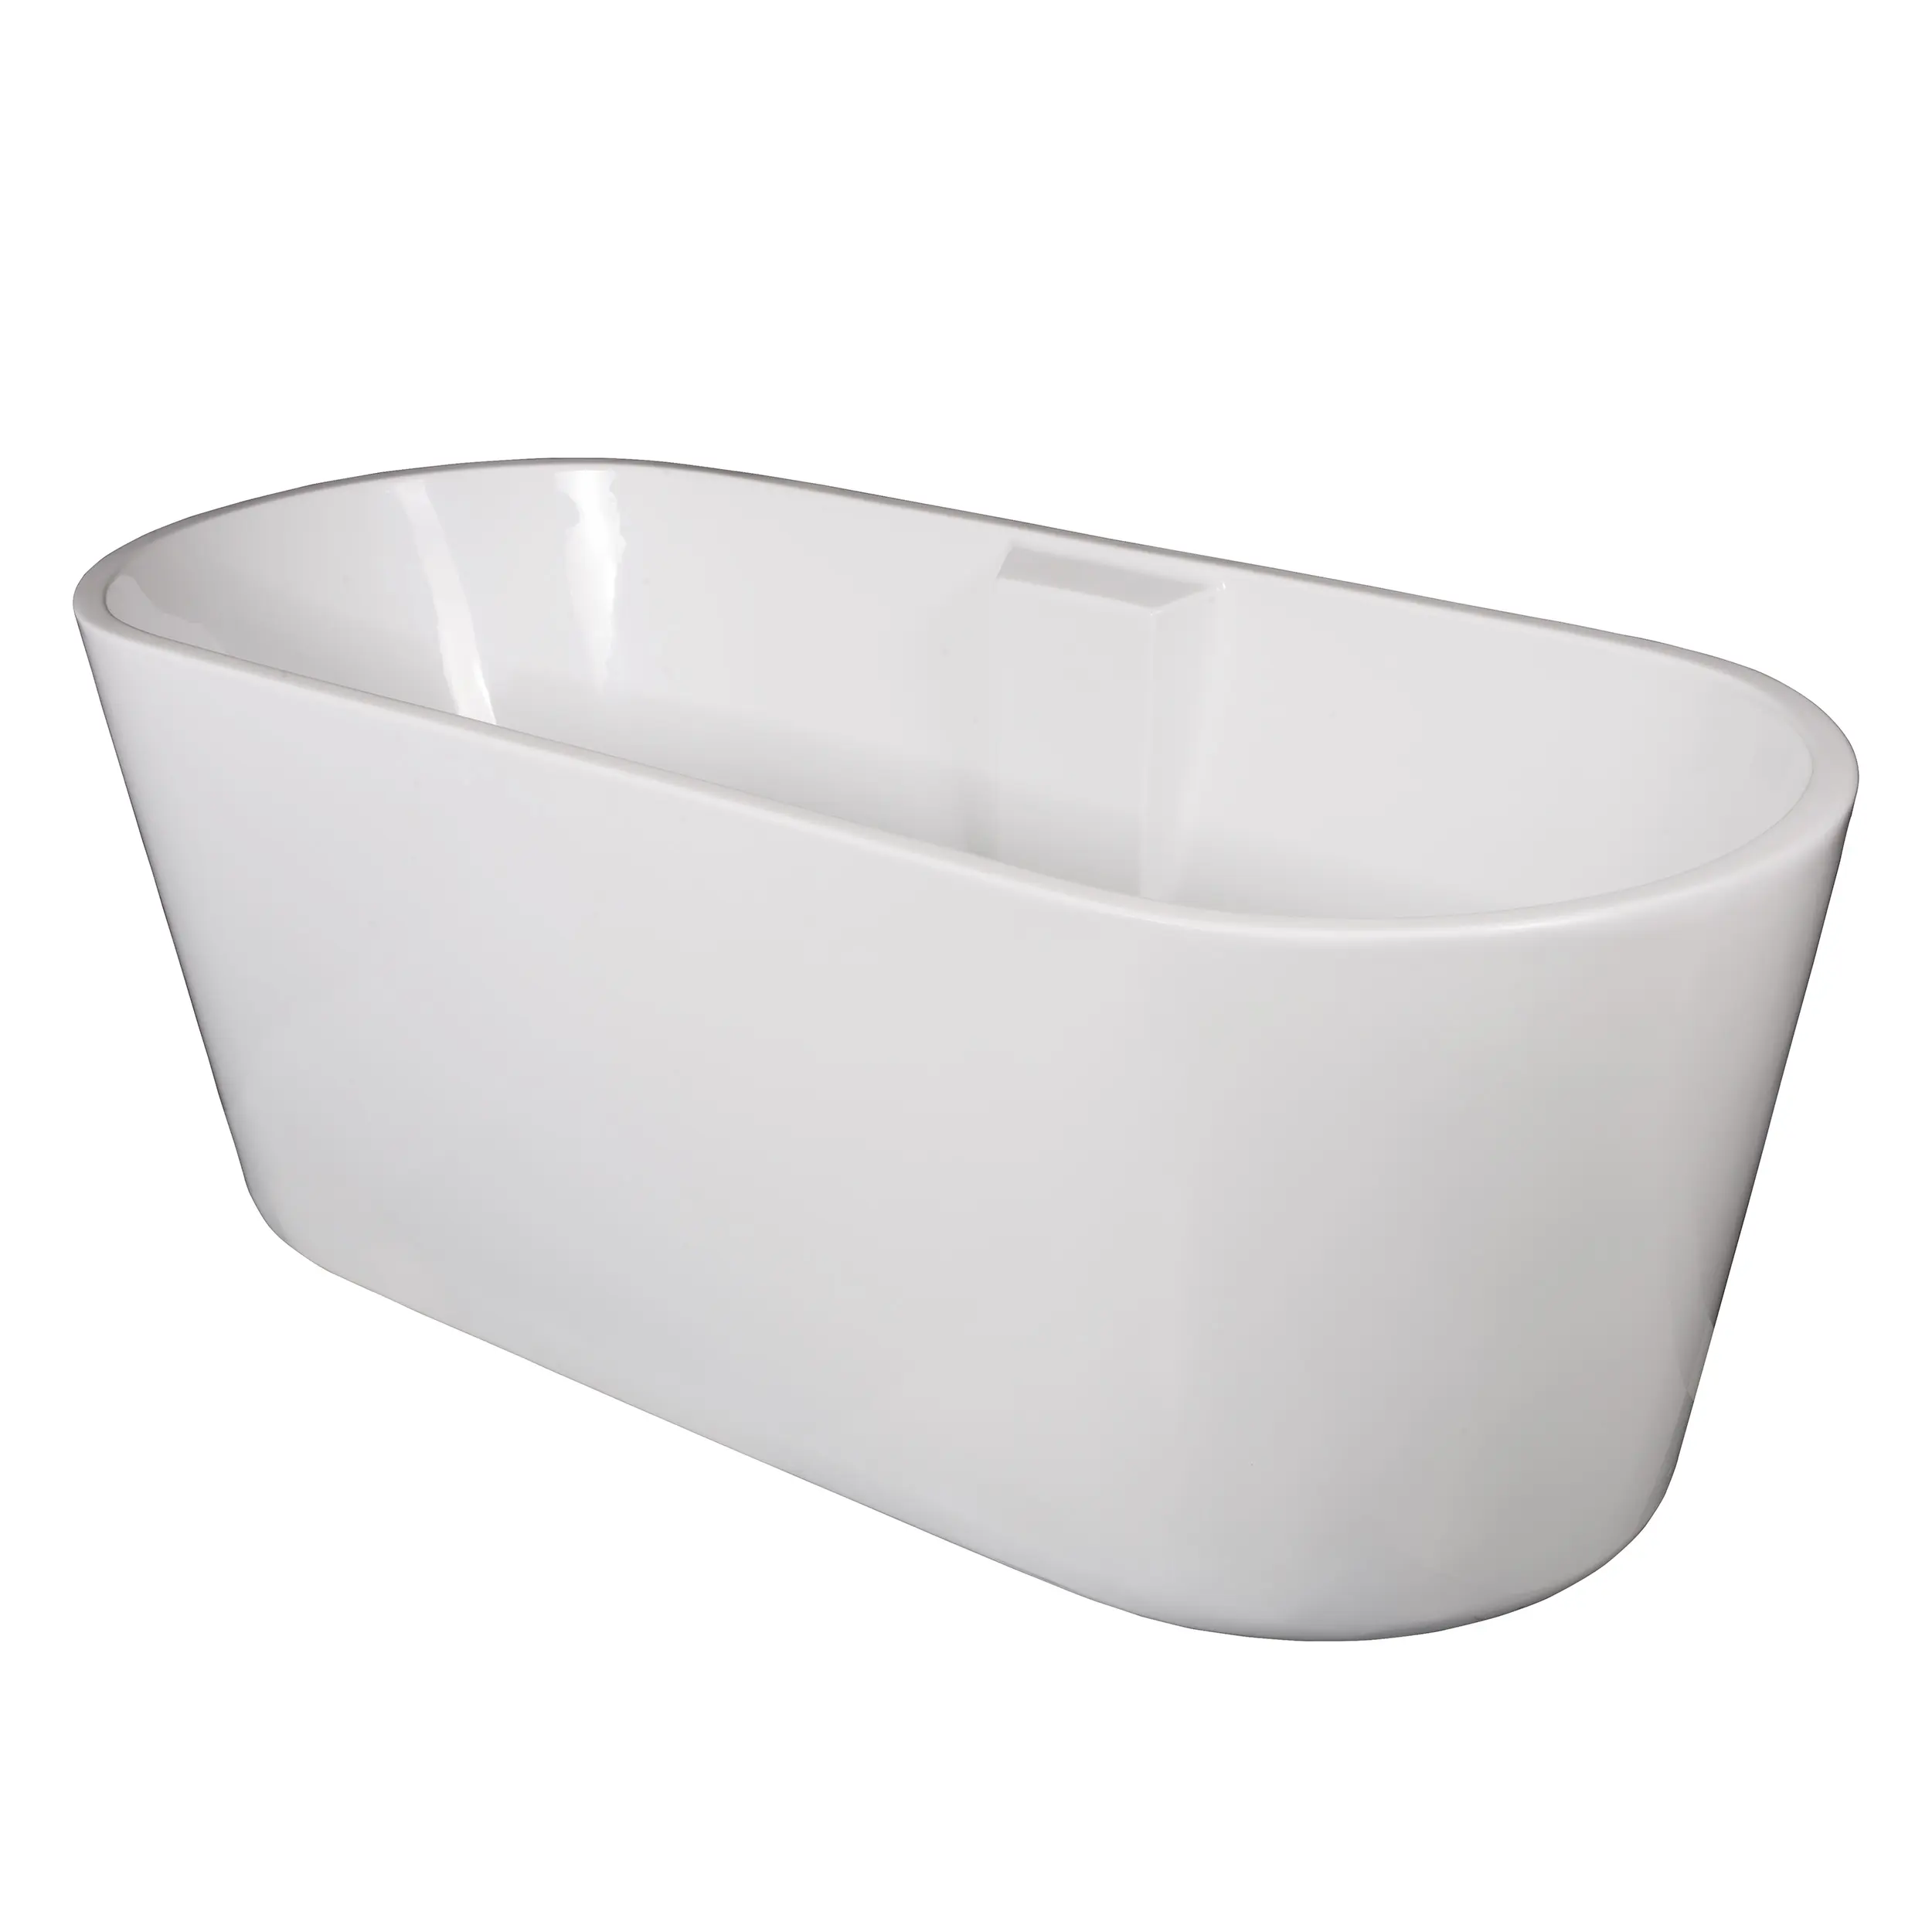 Bagno bianco freestanding vasca da bagno moderna vasca da bagno in acrilico